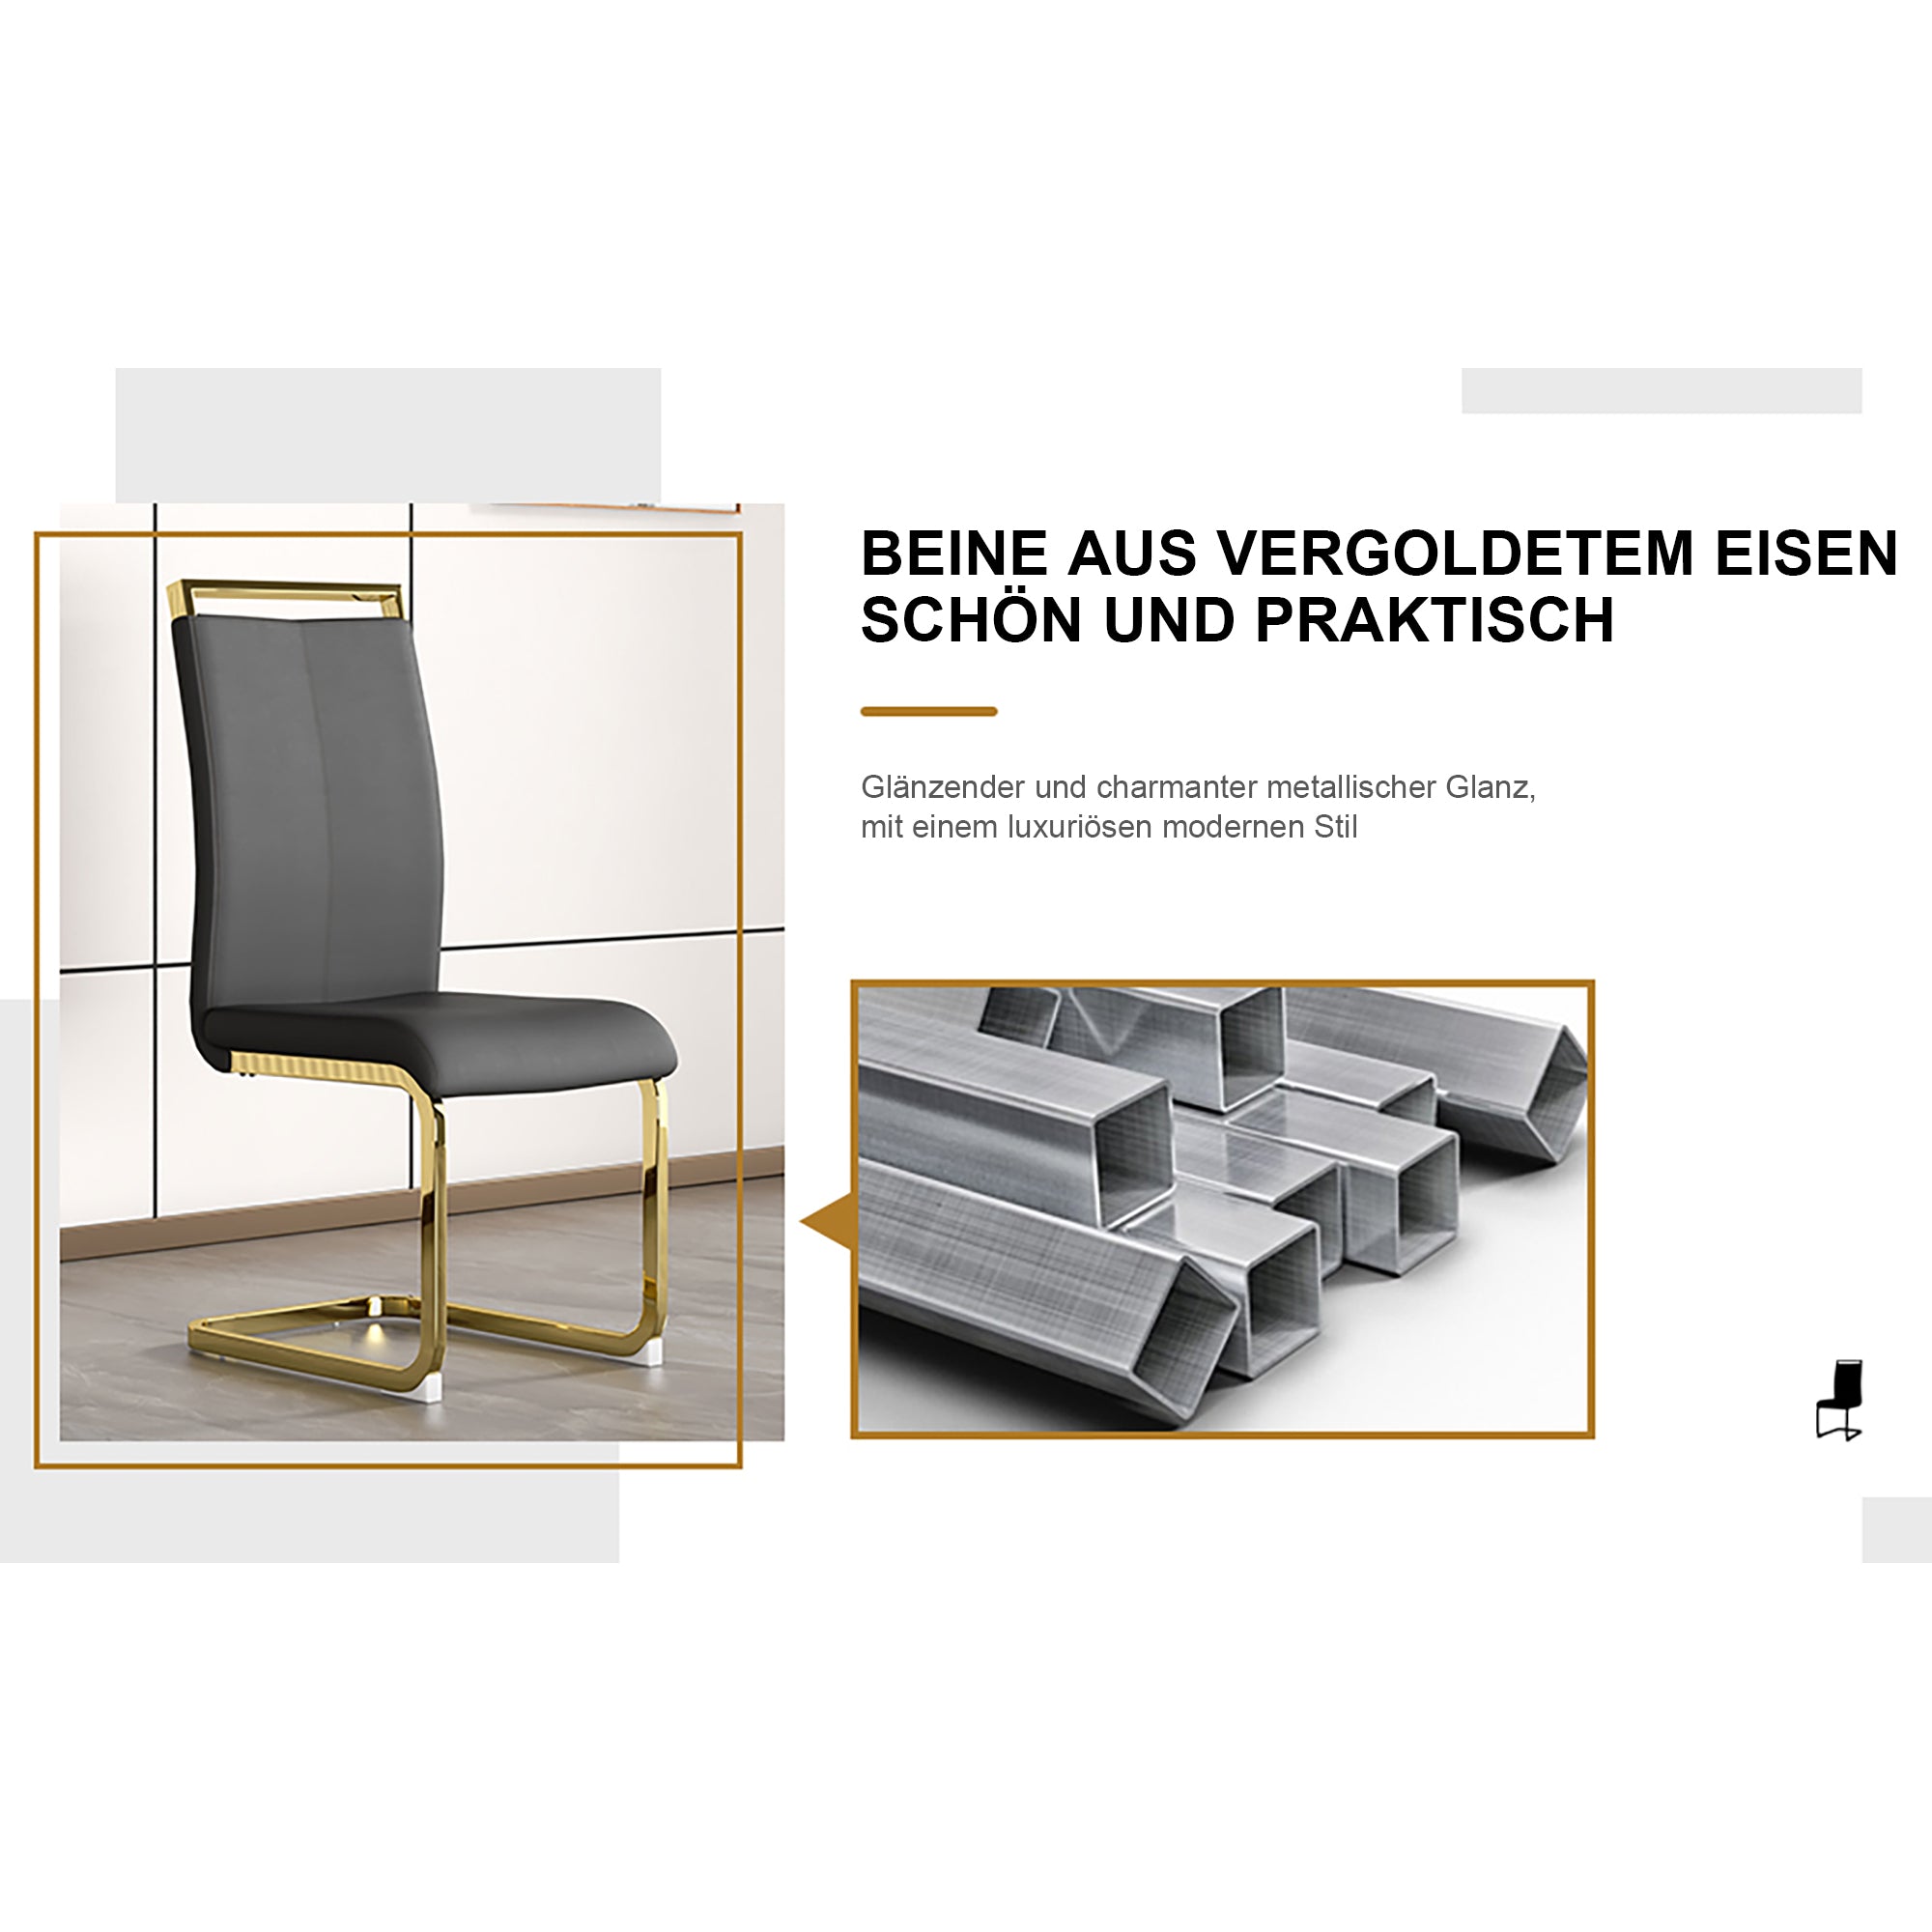 okwish 4-teiliges Freischwinger-Stuhl-Set, verchromtes Metallgestell, Esstisch und Stühle mit einer Belastbarkeit von 150 kg, rutschfeste Fußpolster, vergoldete Beine, schwarzer Kunstlederbezug